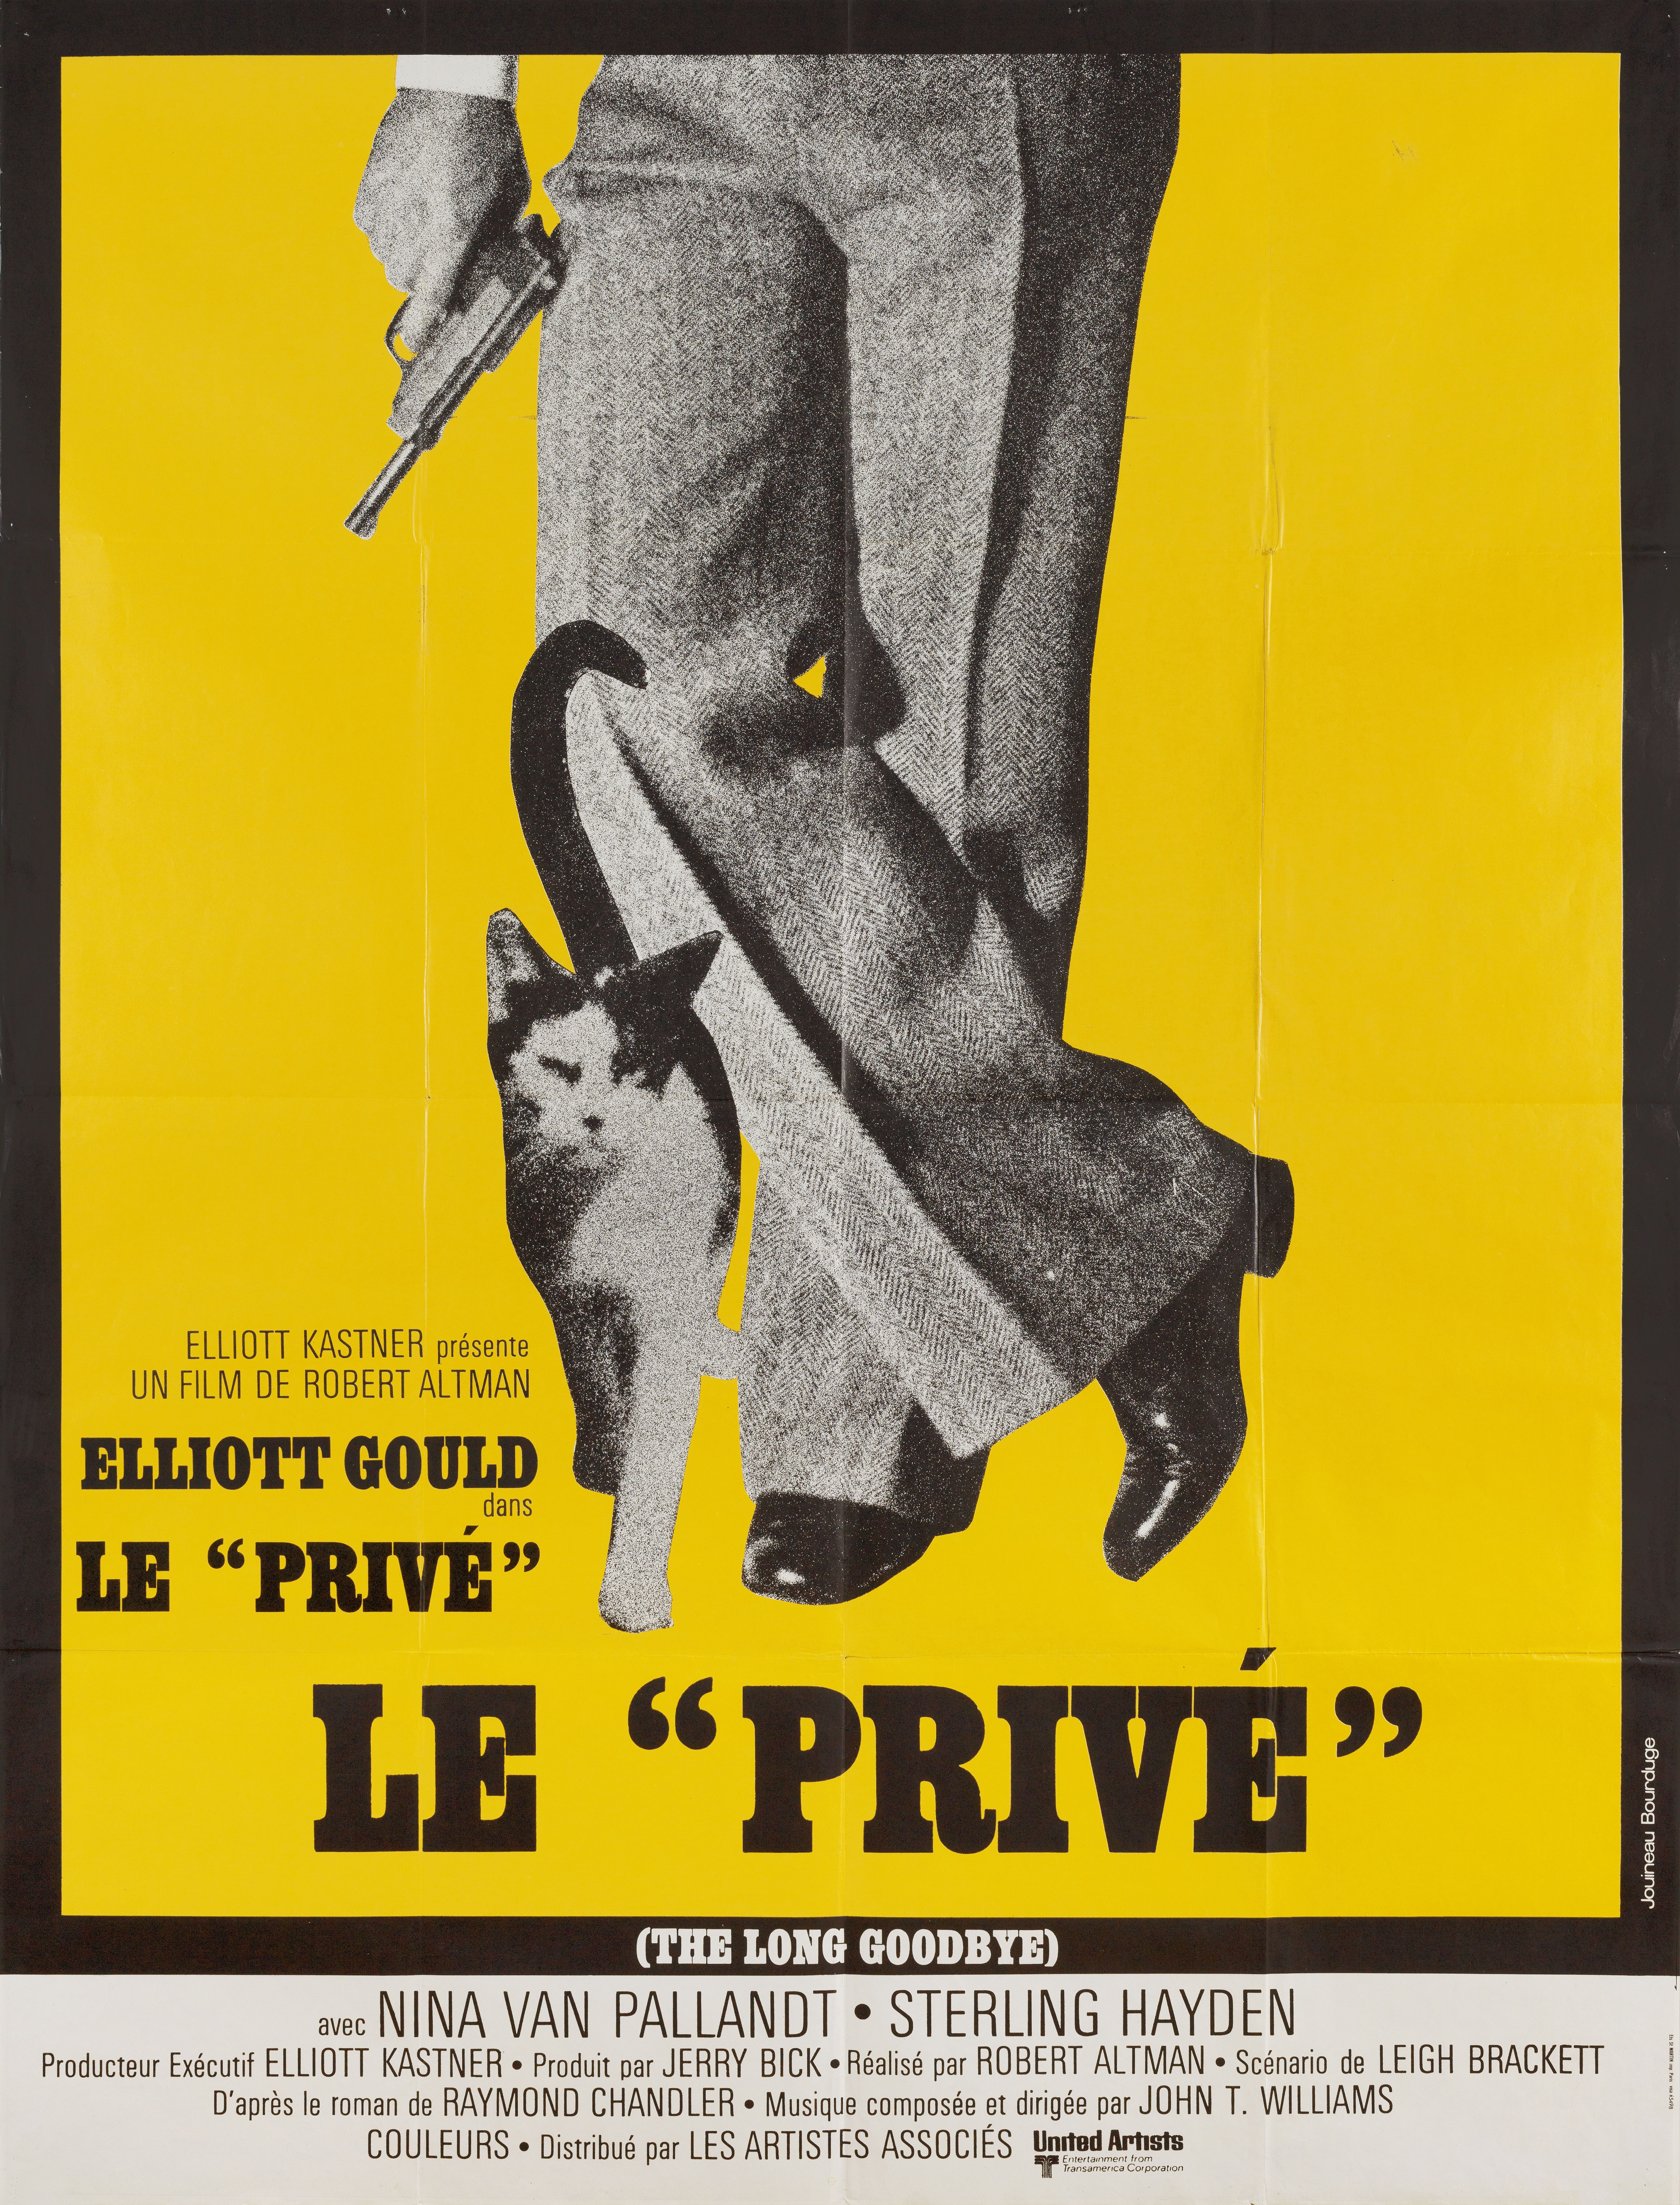 Долгое прощание (The Long Goodbye, 1973), режиссёр Роберт Альтман, французский постер к фильму, автор Жуино Бурдюж (графический дизайн, 1973 год)